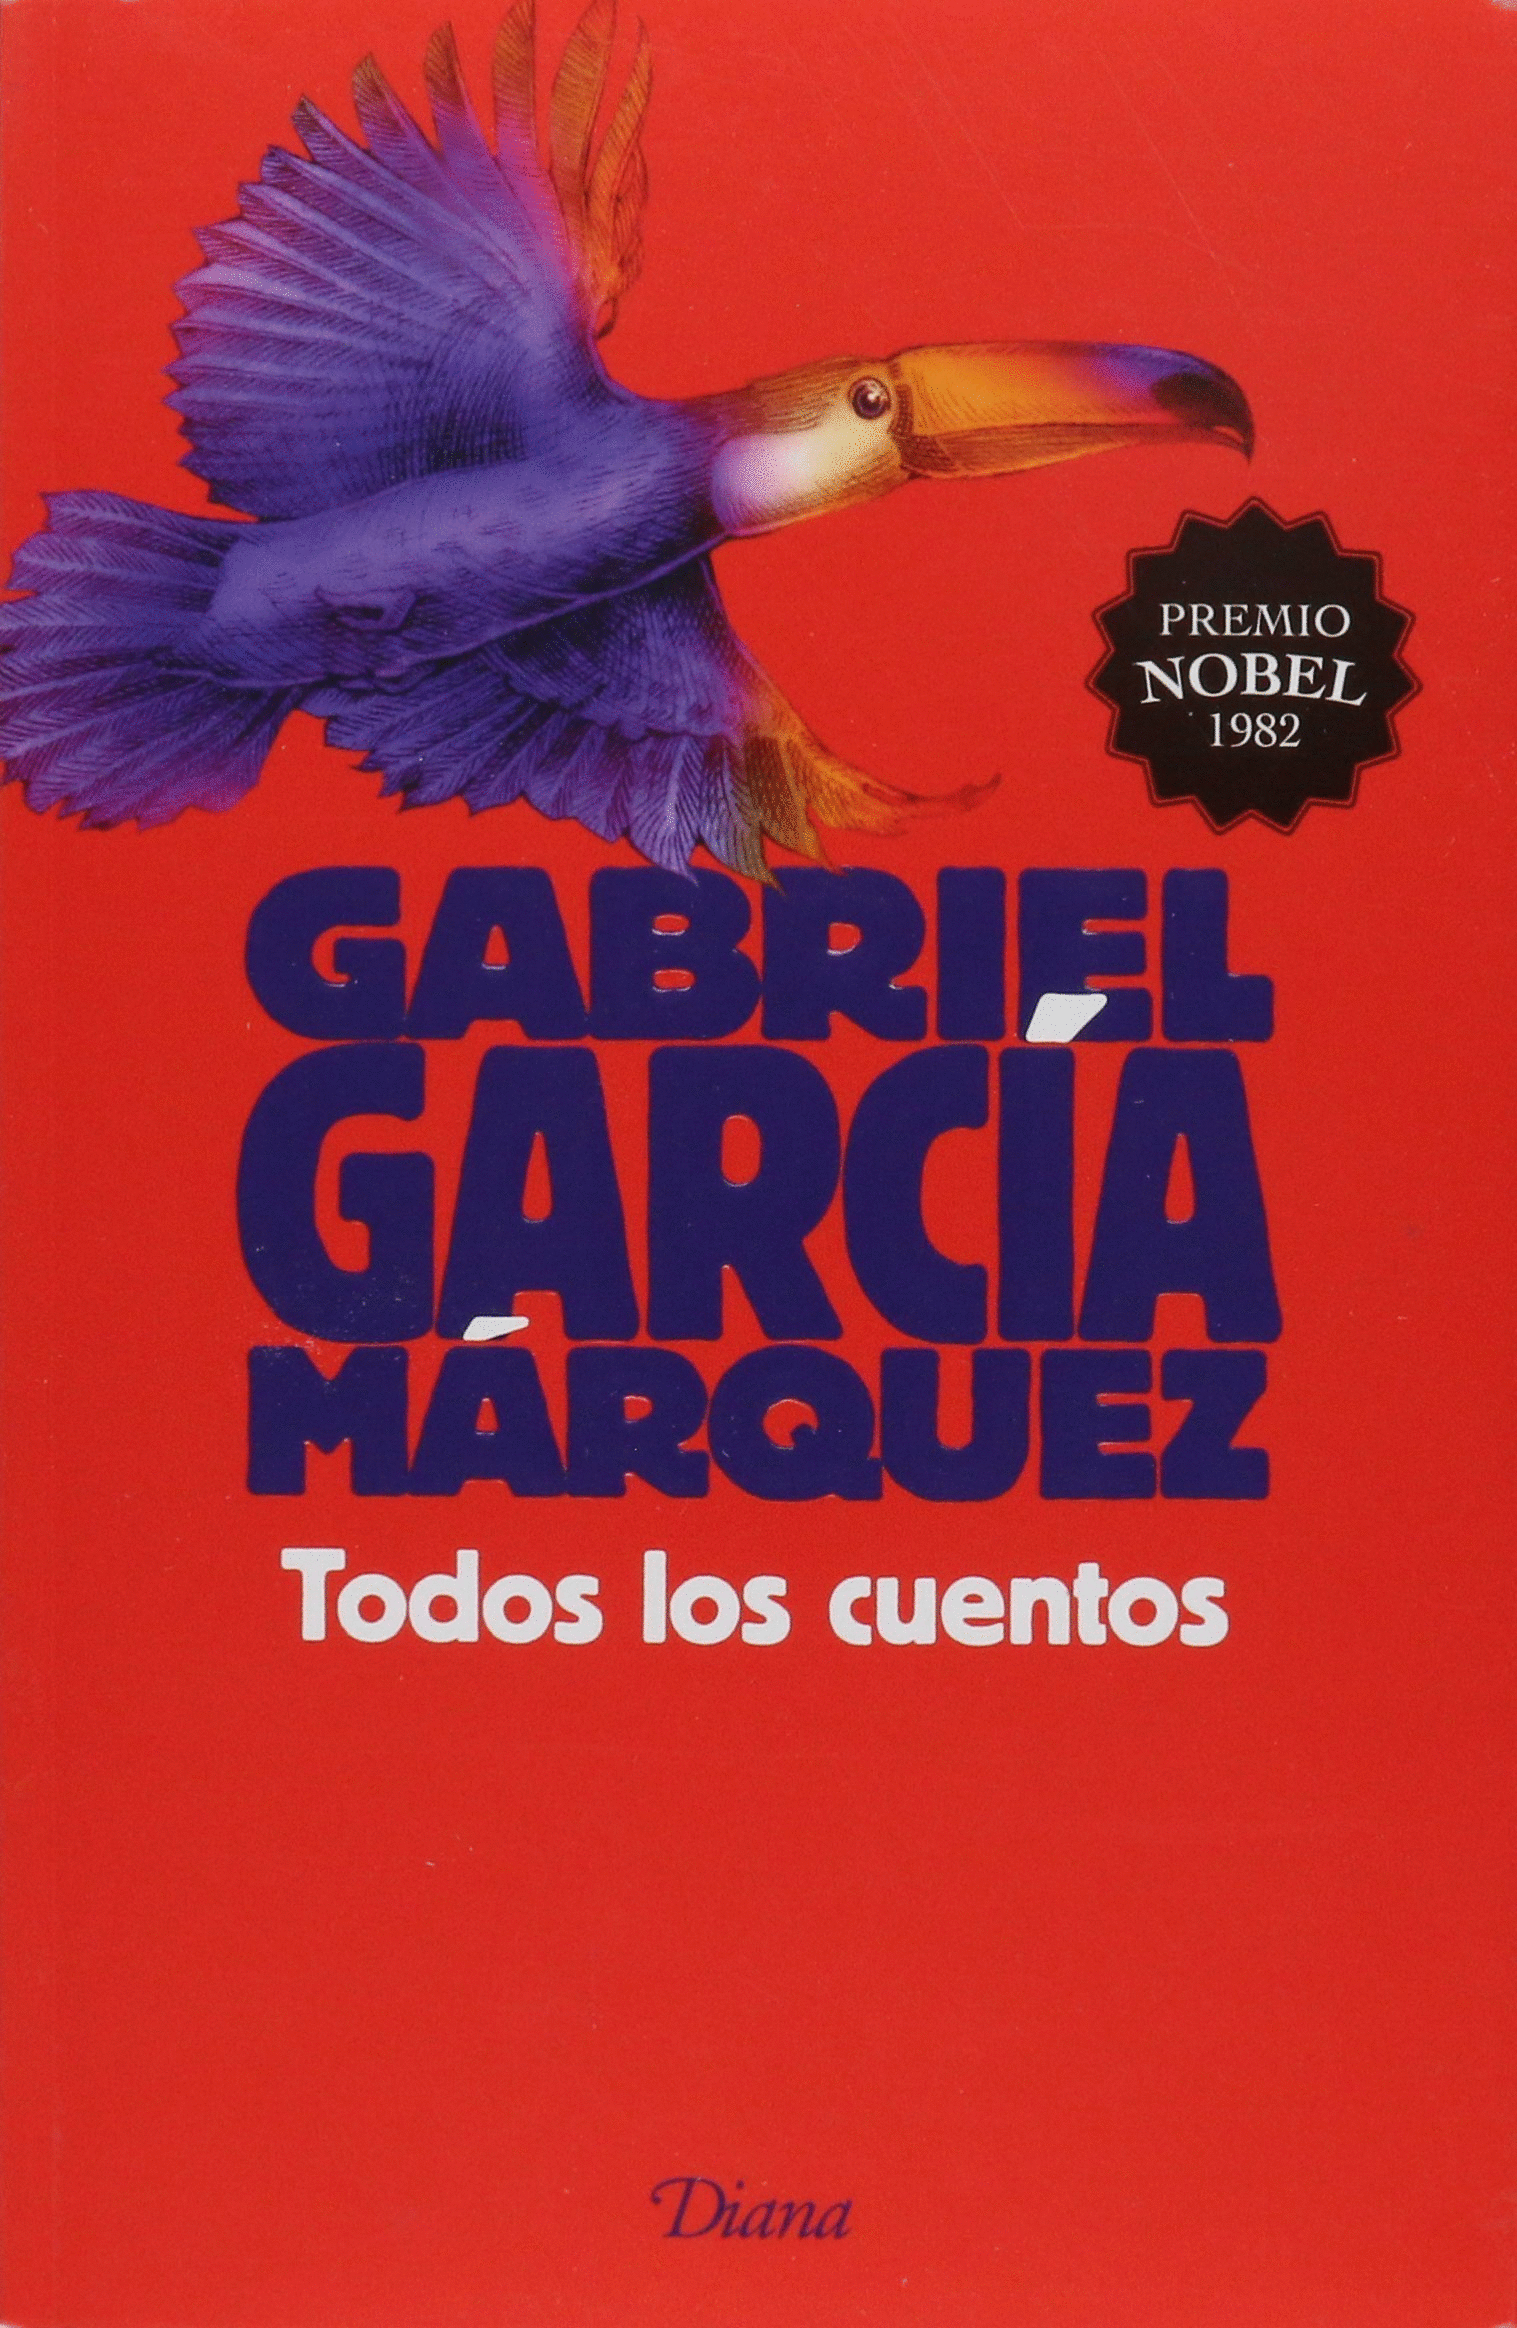 Todos los cuentos. García Márquez, Gabriel. Libro en papel. 9786070727566  Cafebrería El Péndulo